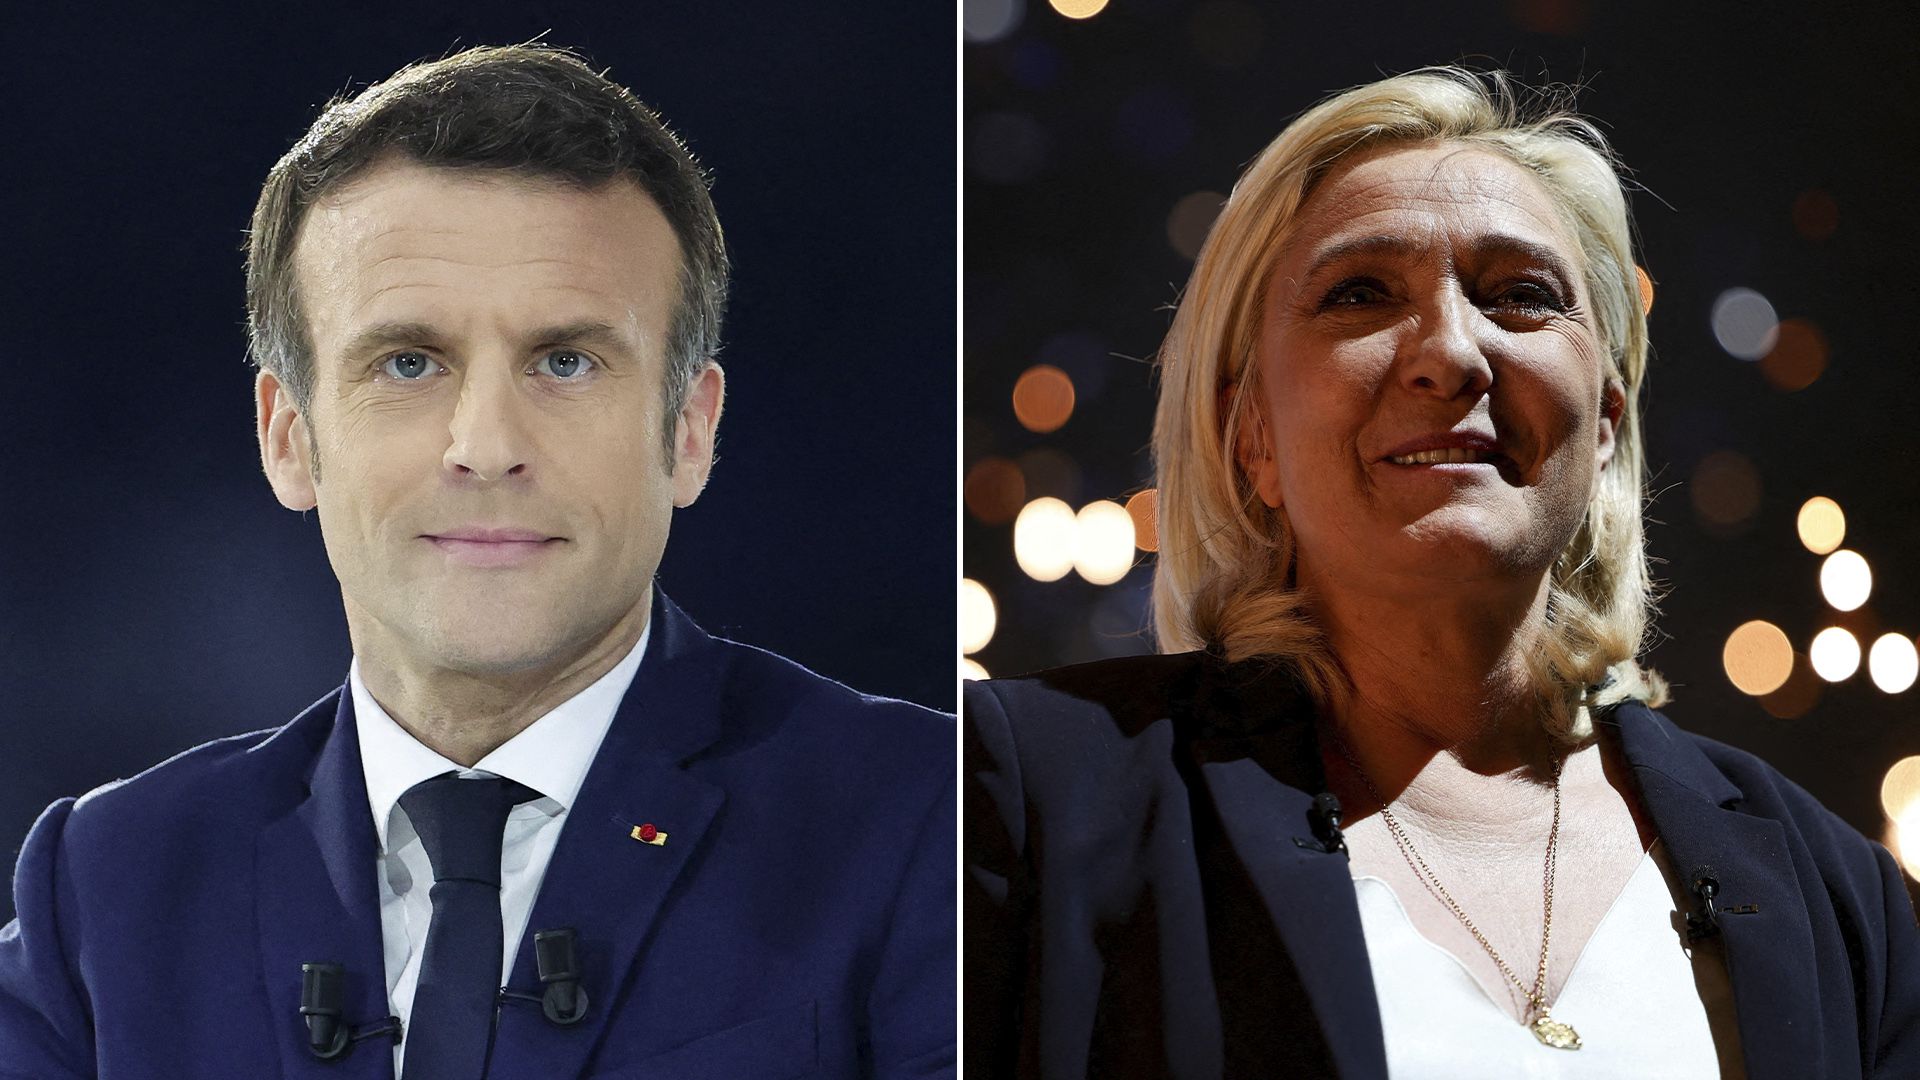 Emmanuel Macron y Marine Le Pen se volverán a enfrentar en la segunda vuelta presidencial el próximo domingo 24 de abril. Foto: gentileza.